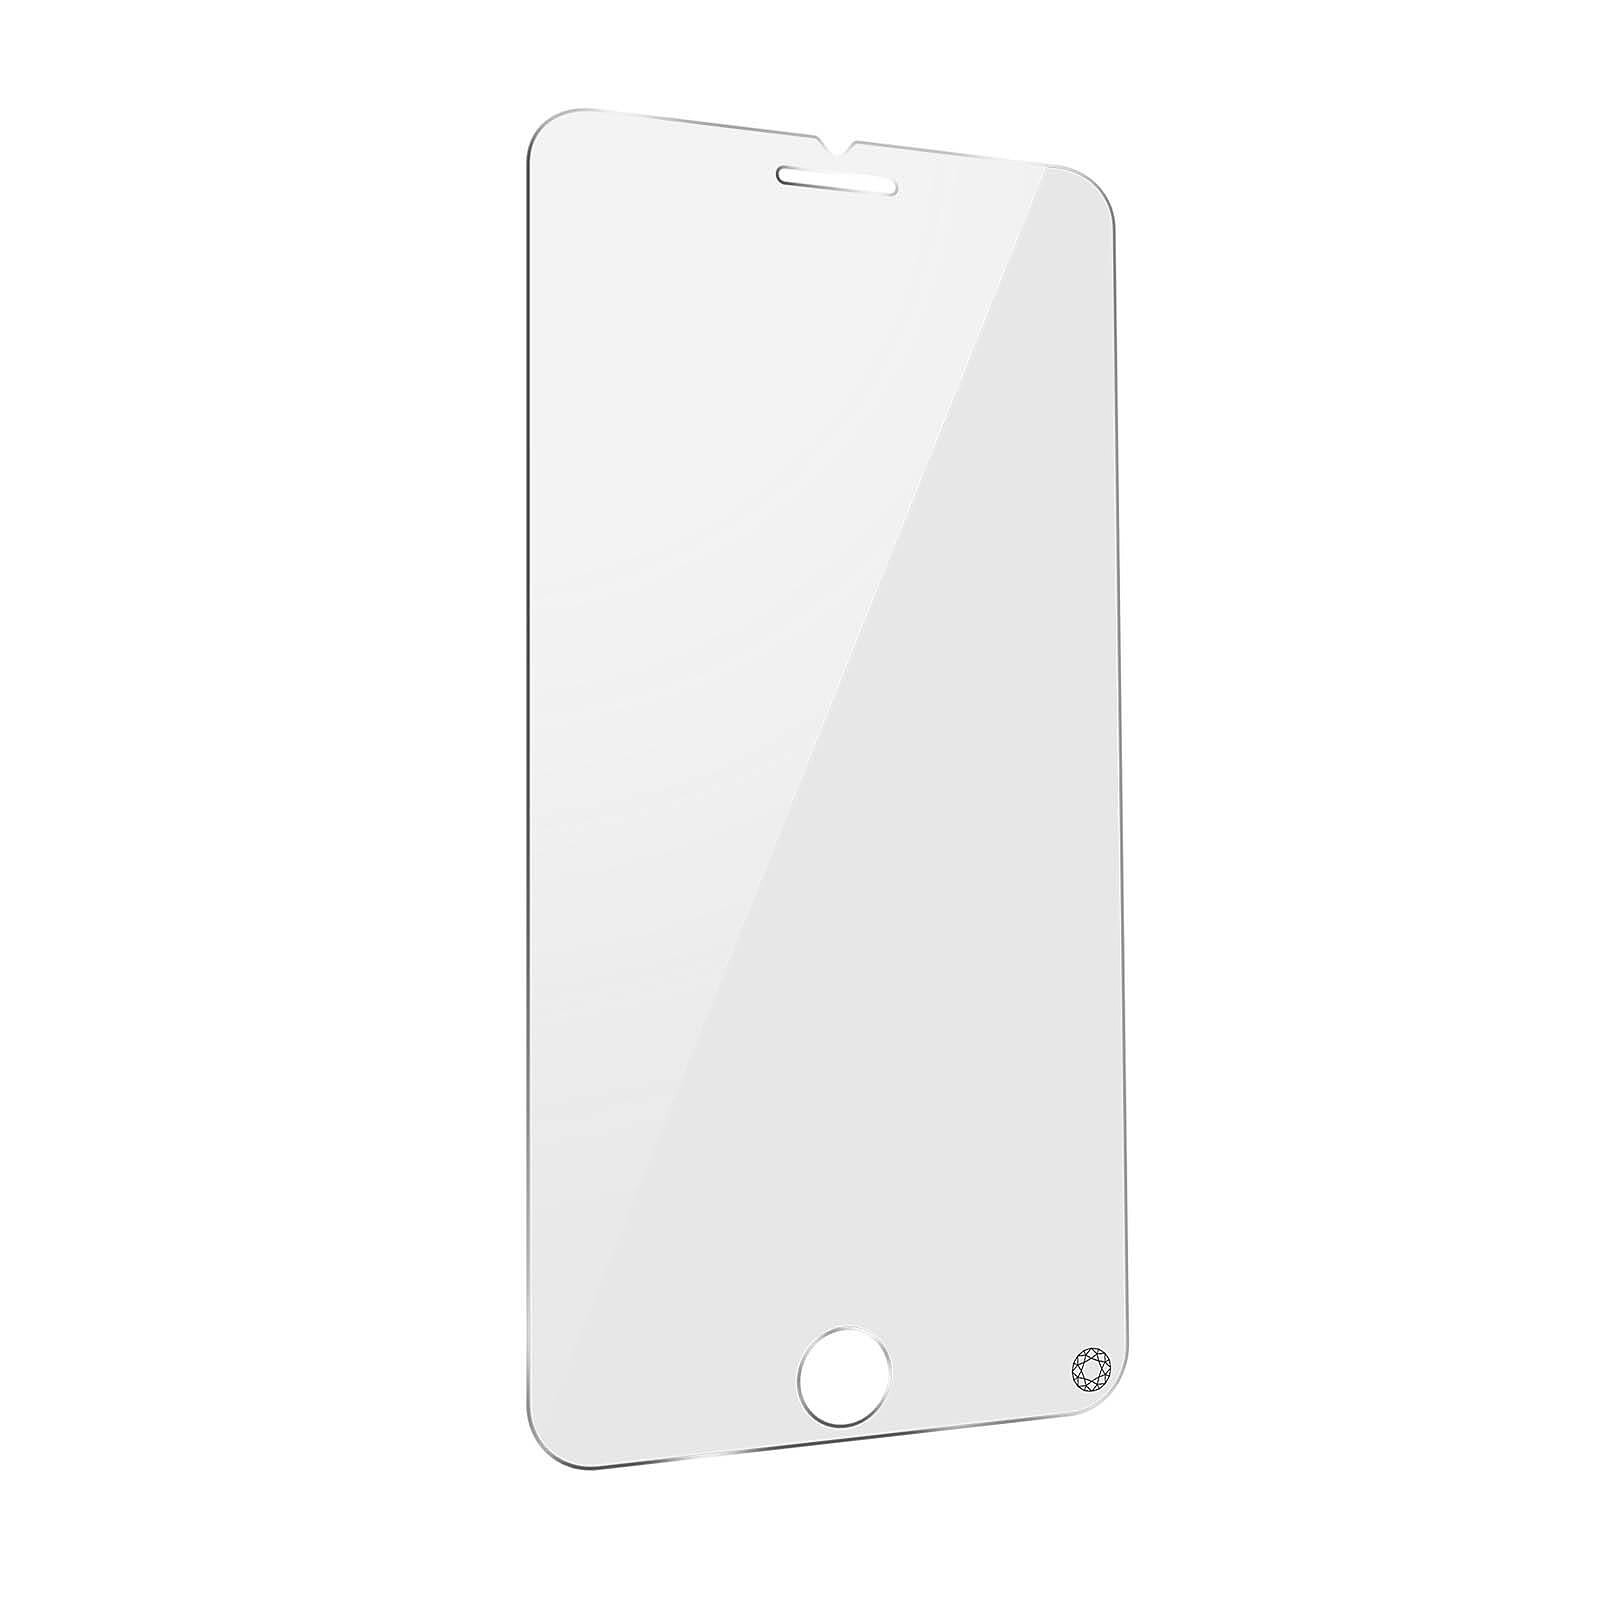 Force Glass Verre Trempé pour iPhone 11 Pro Max Dureté 9H+ Biseauté  Garantie à vie Noir - Protection écran - LDLC